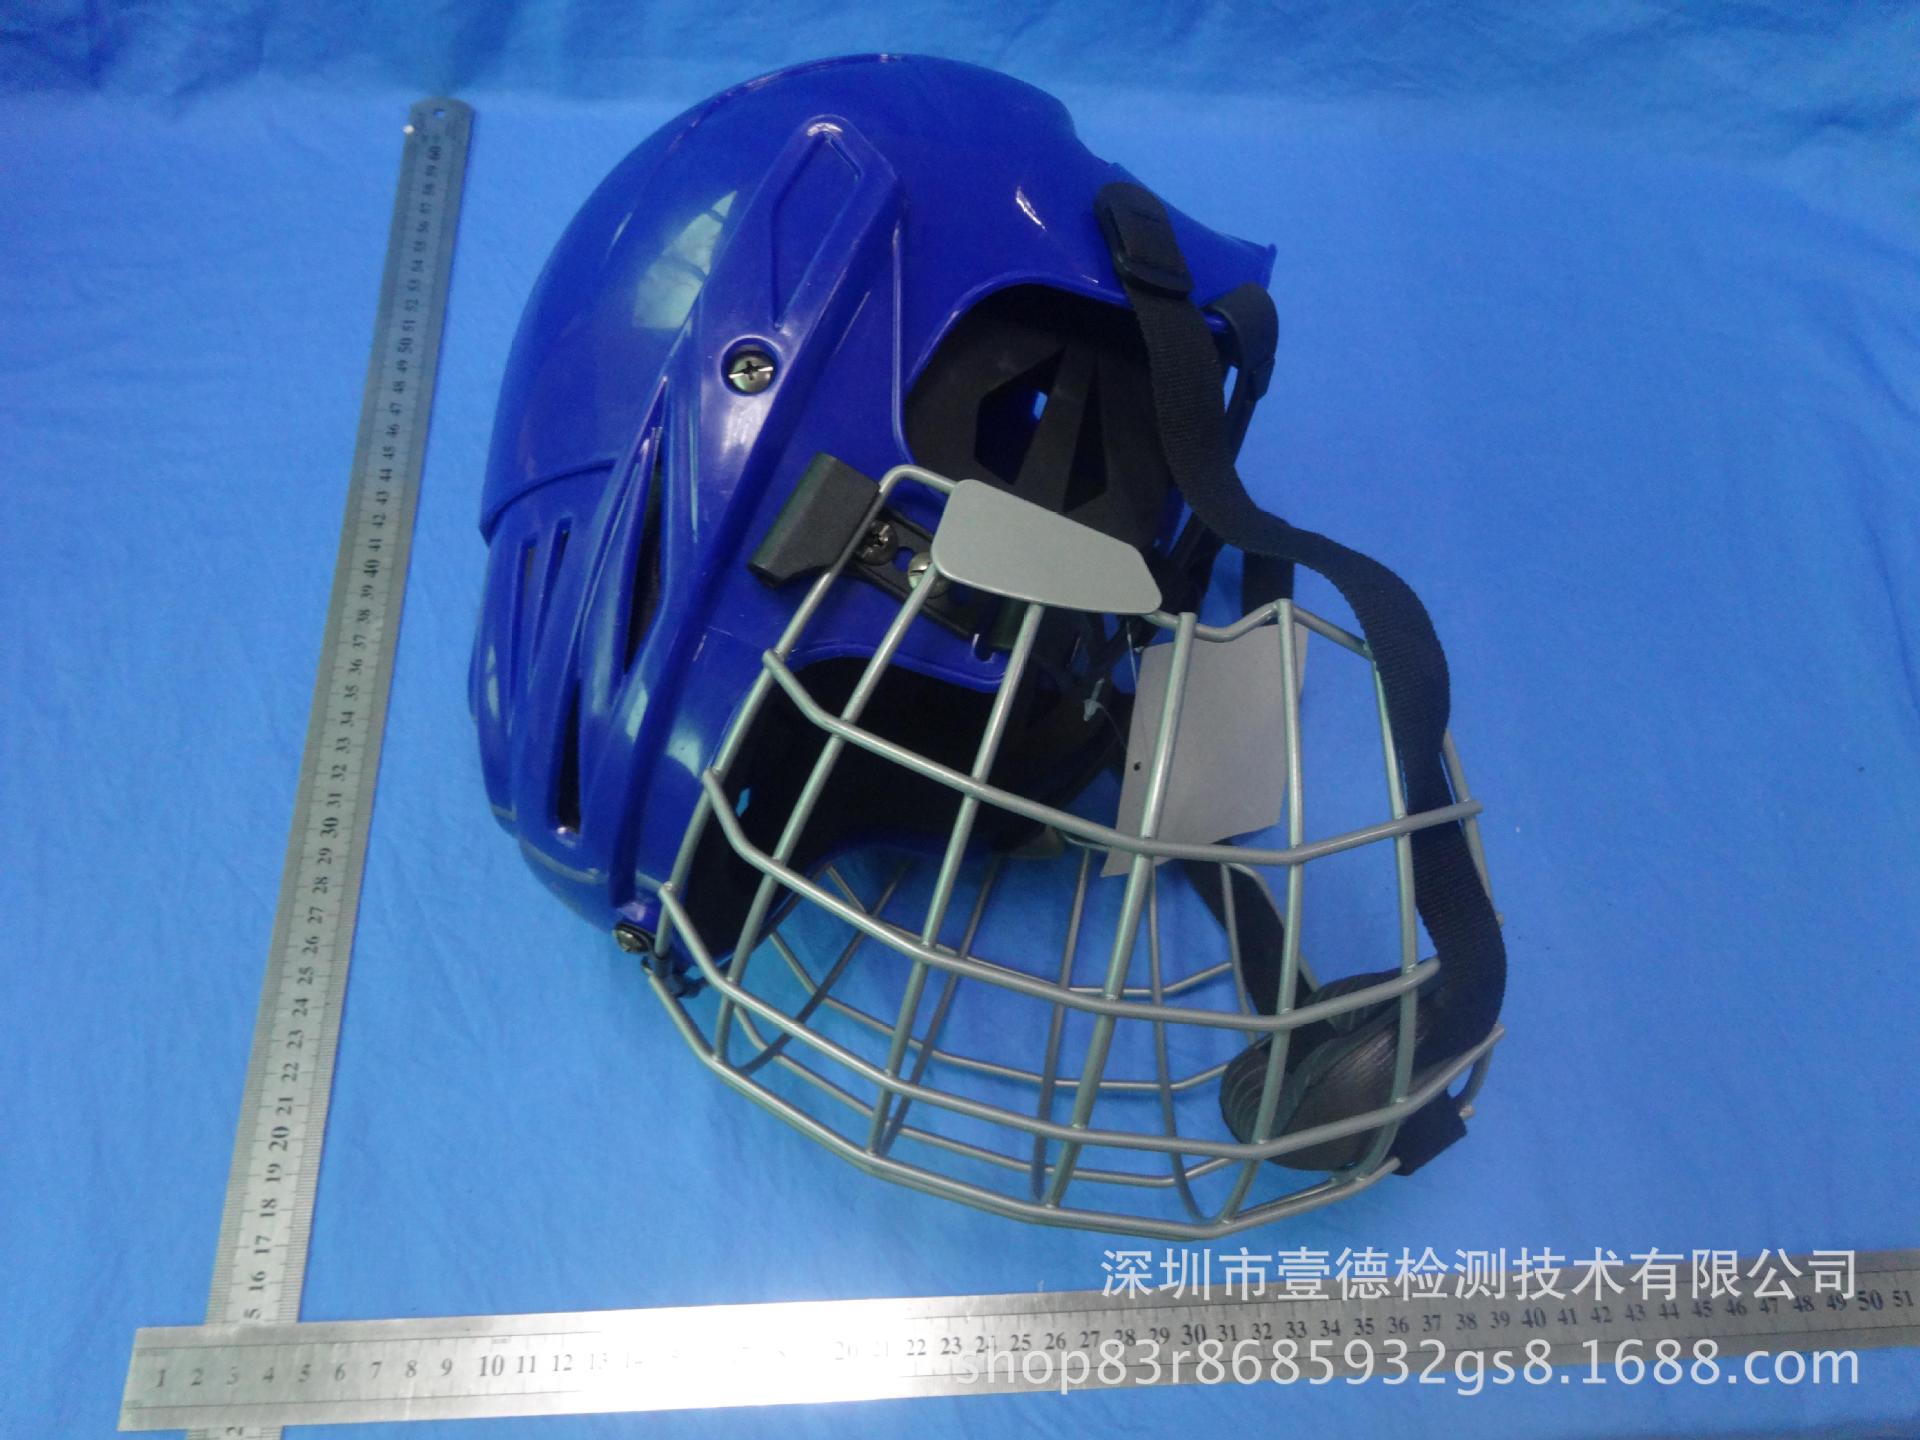 曲棍球运动头盔通过CE认证，符合EN ISO 10256标准